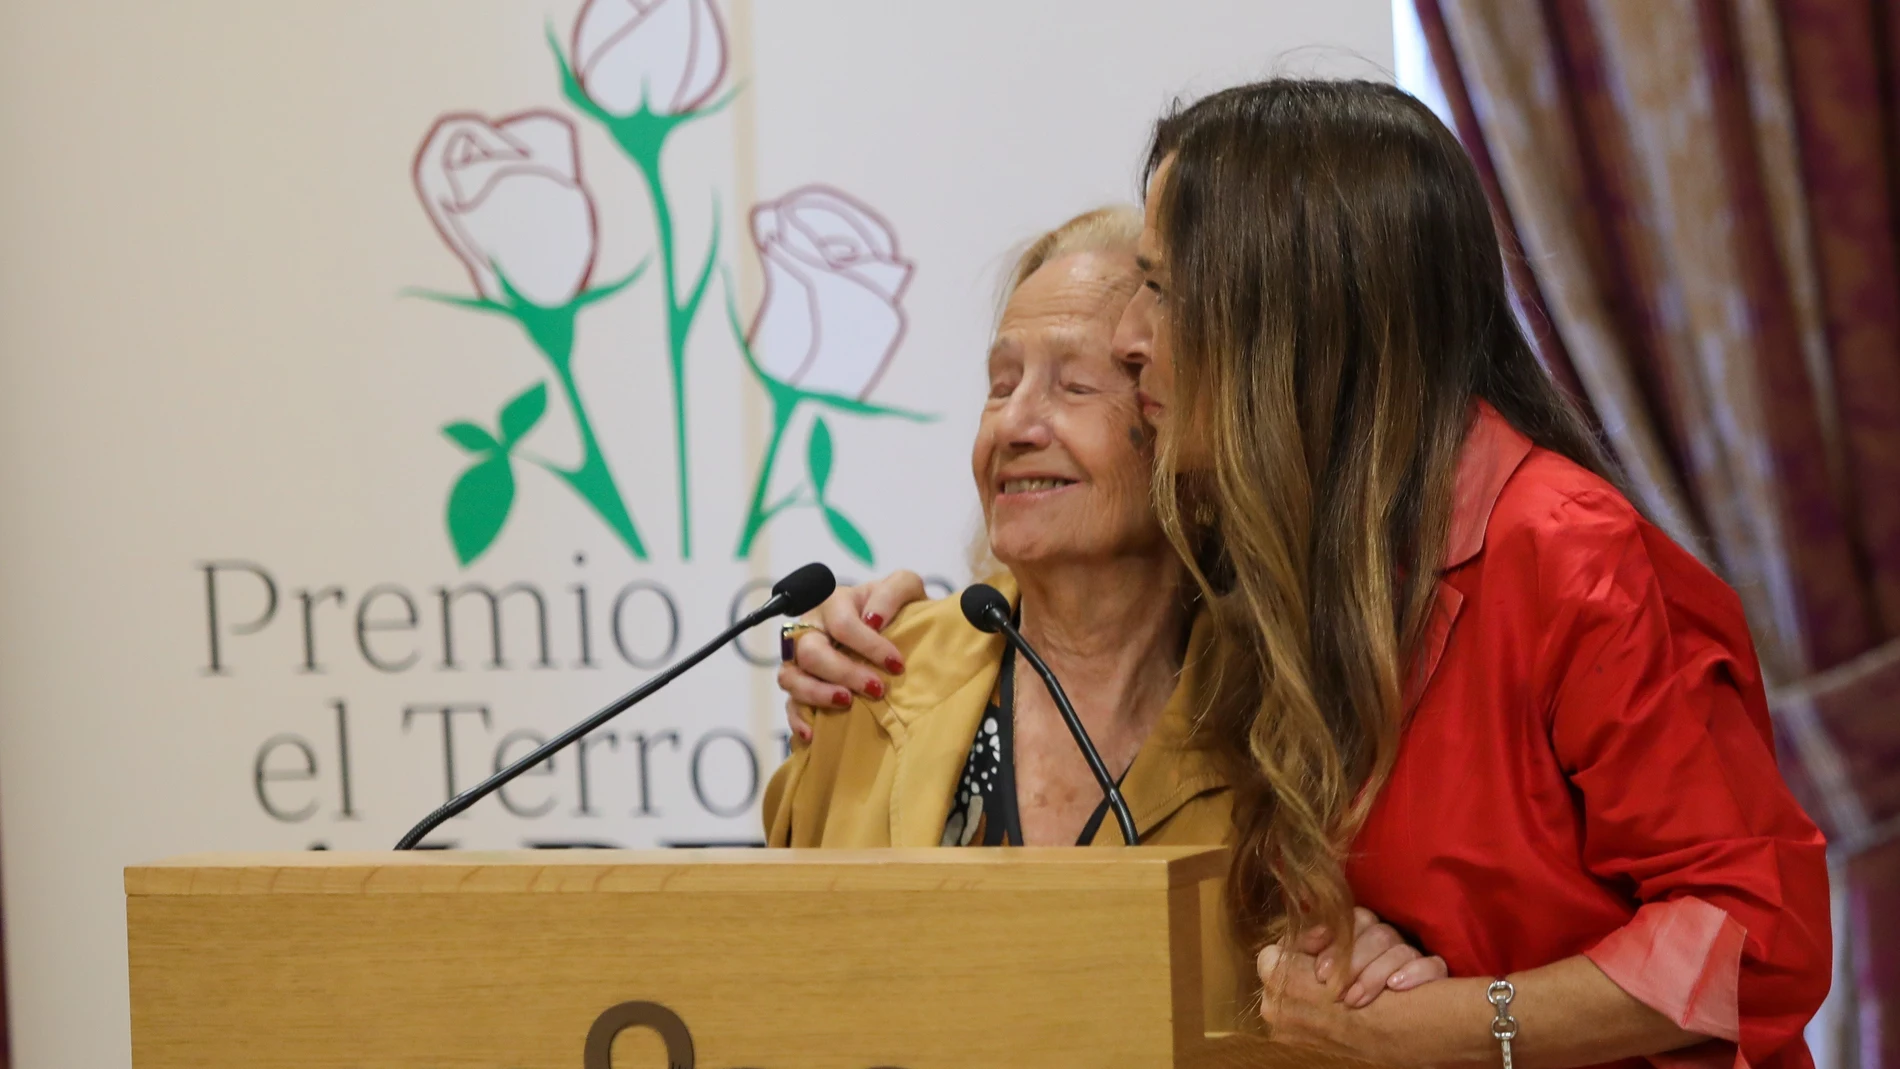 María José Barrio Azcutia recibe el premio de la Fundación Jiménez-Becerril